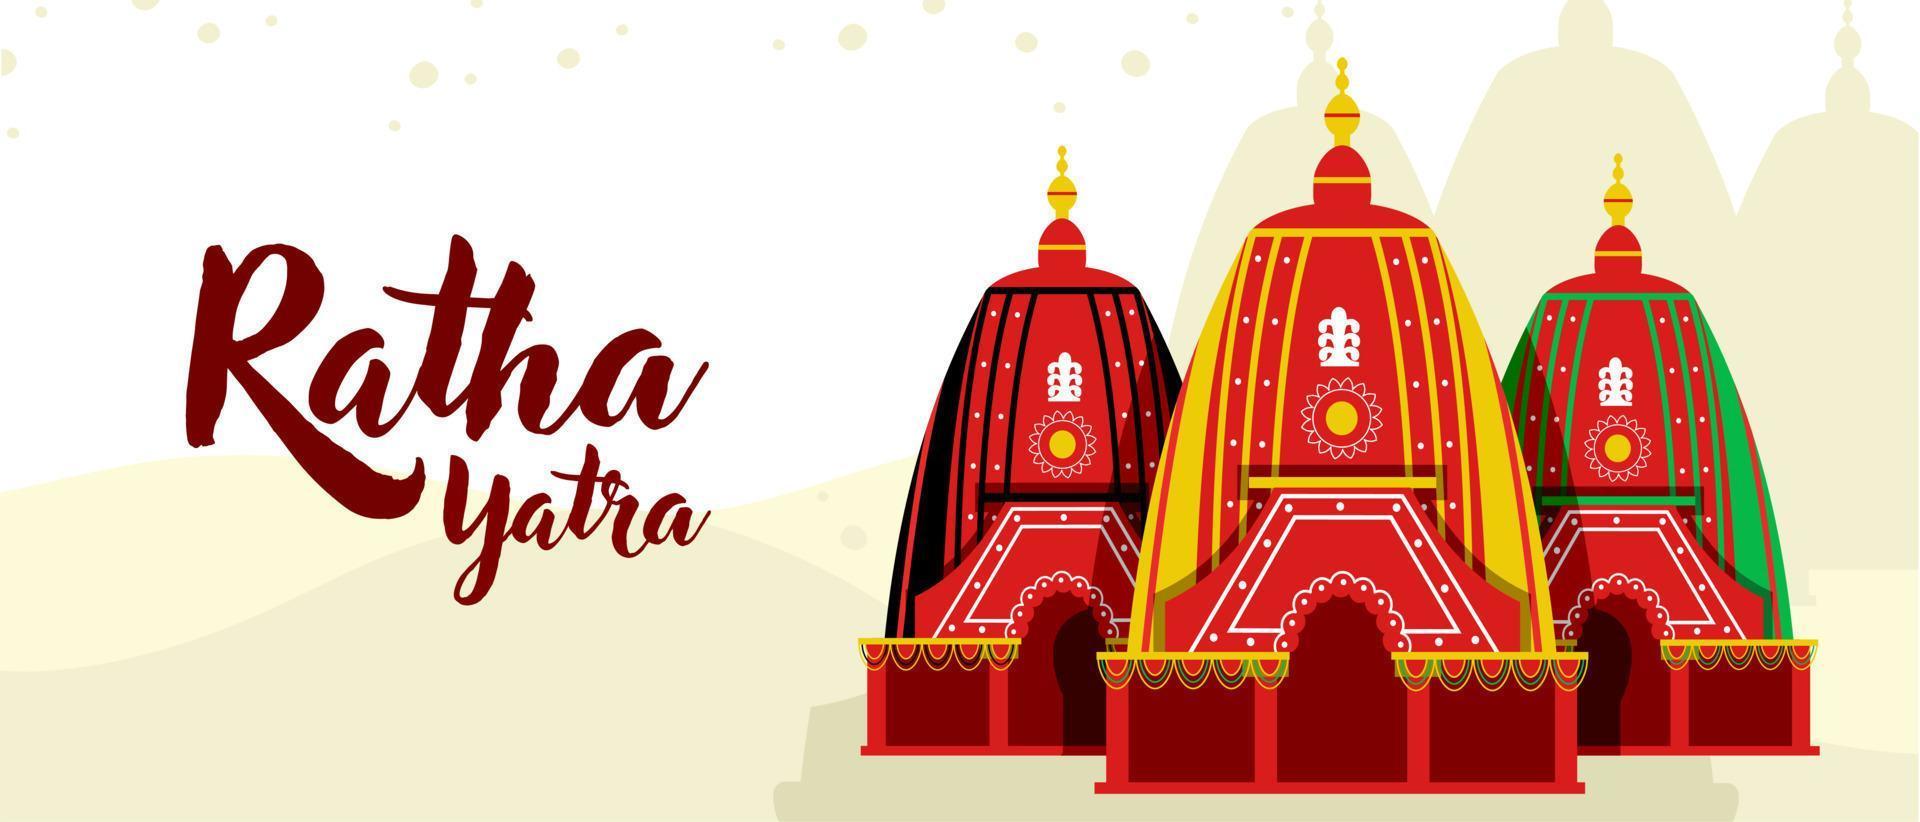 ratha yatra festival uma carruagem com divindades de madeira de jagannath, baladeva e subhadra. ilustração vetorial de cartão de felicitações de banner de férias vetor